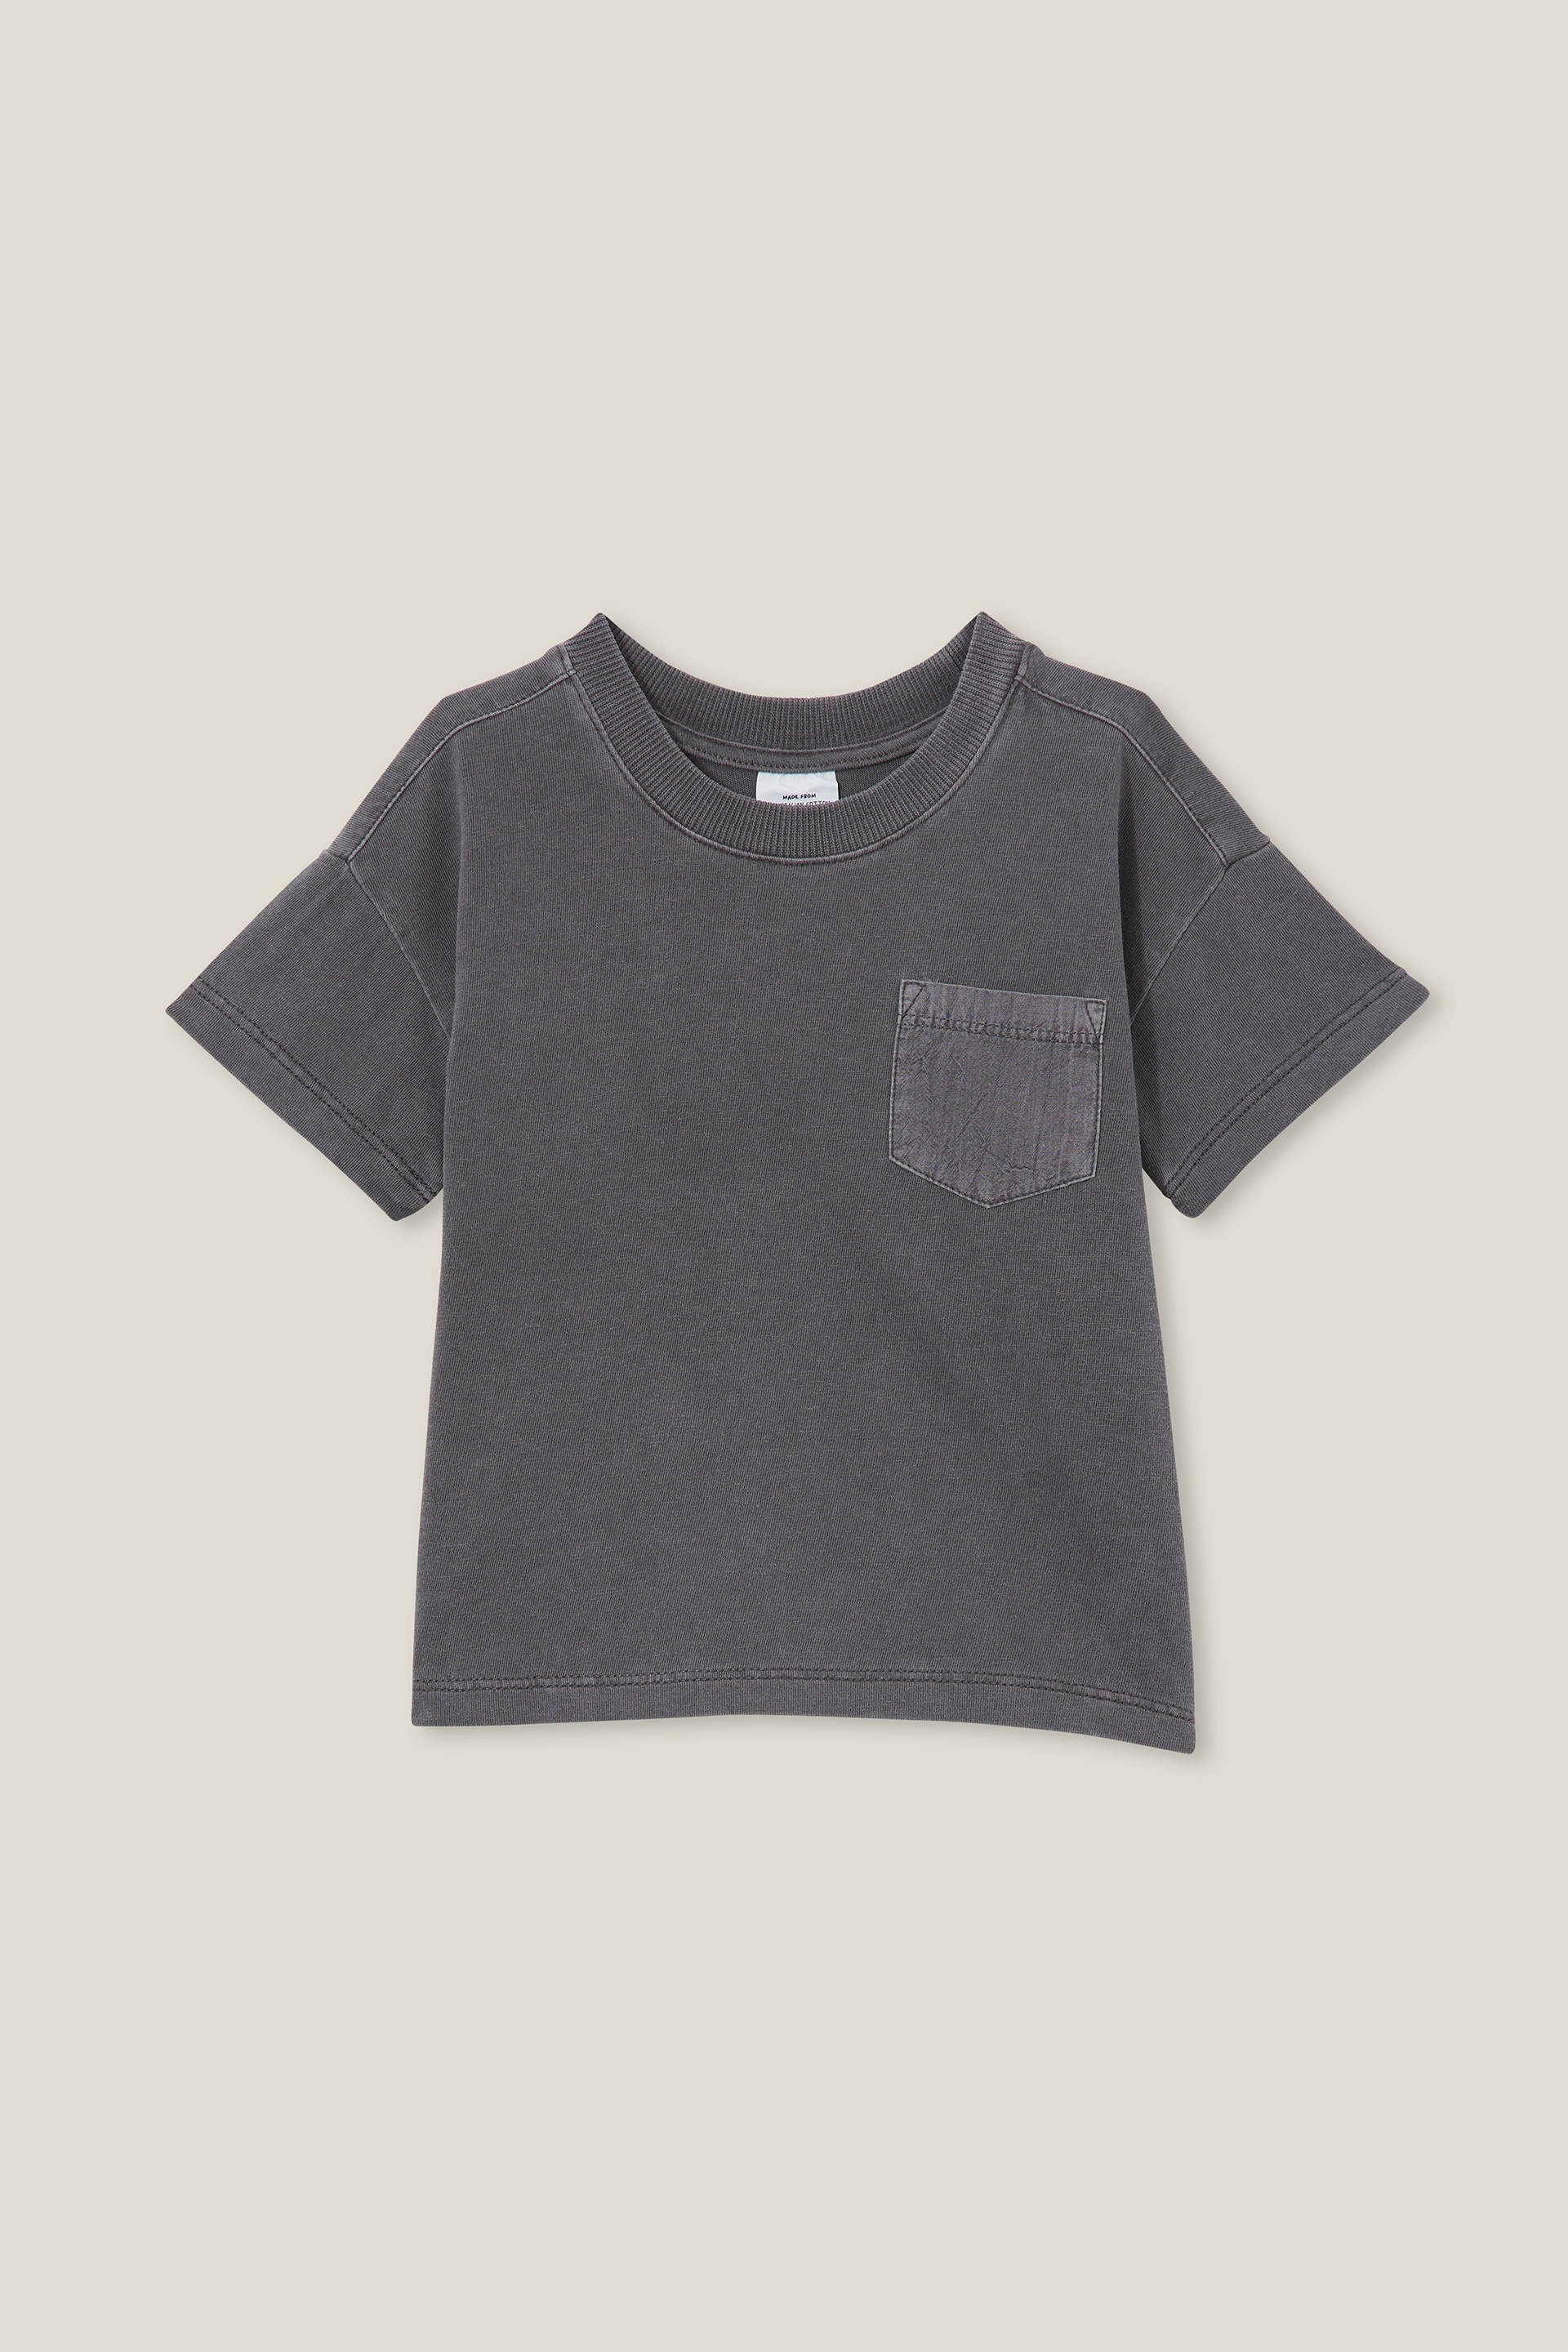 Cotton On Kids - Alfie Drop Shoulder Tee - Rabbit grey wash